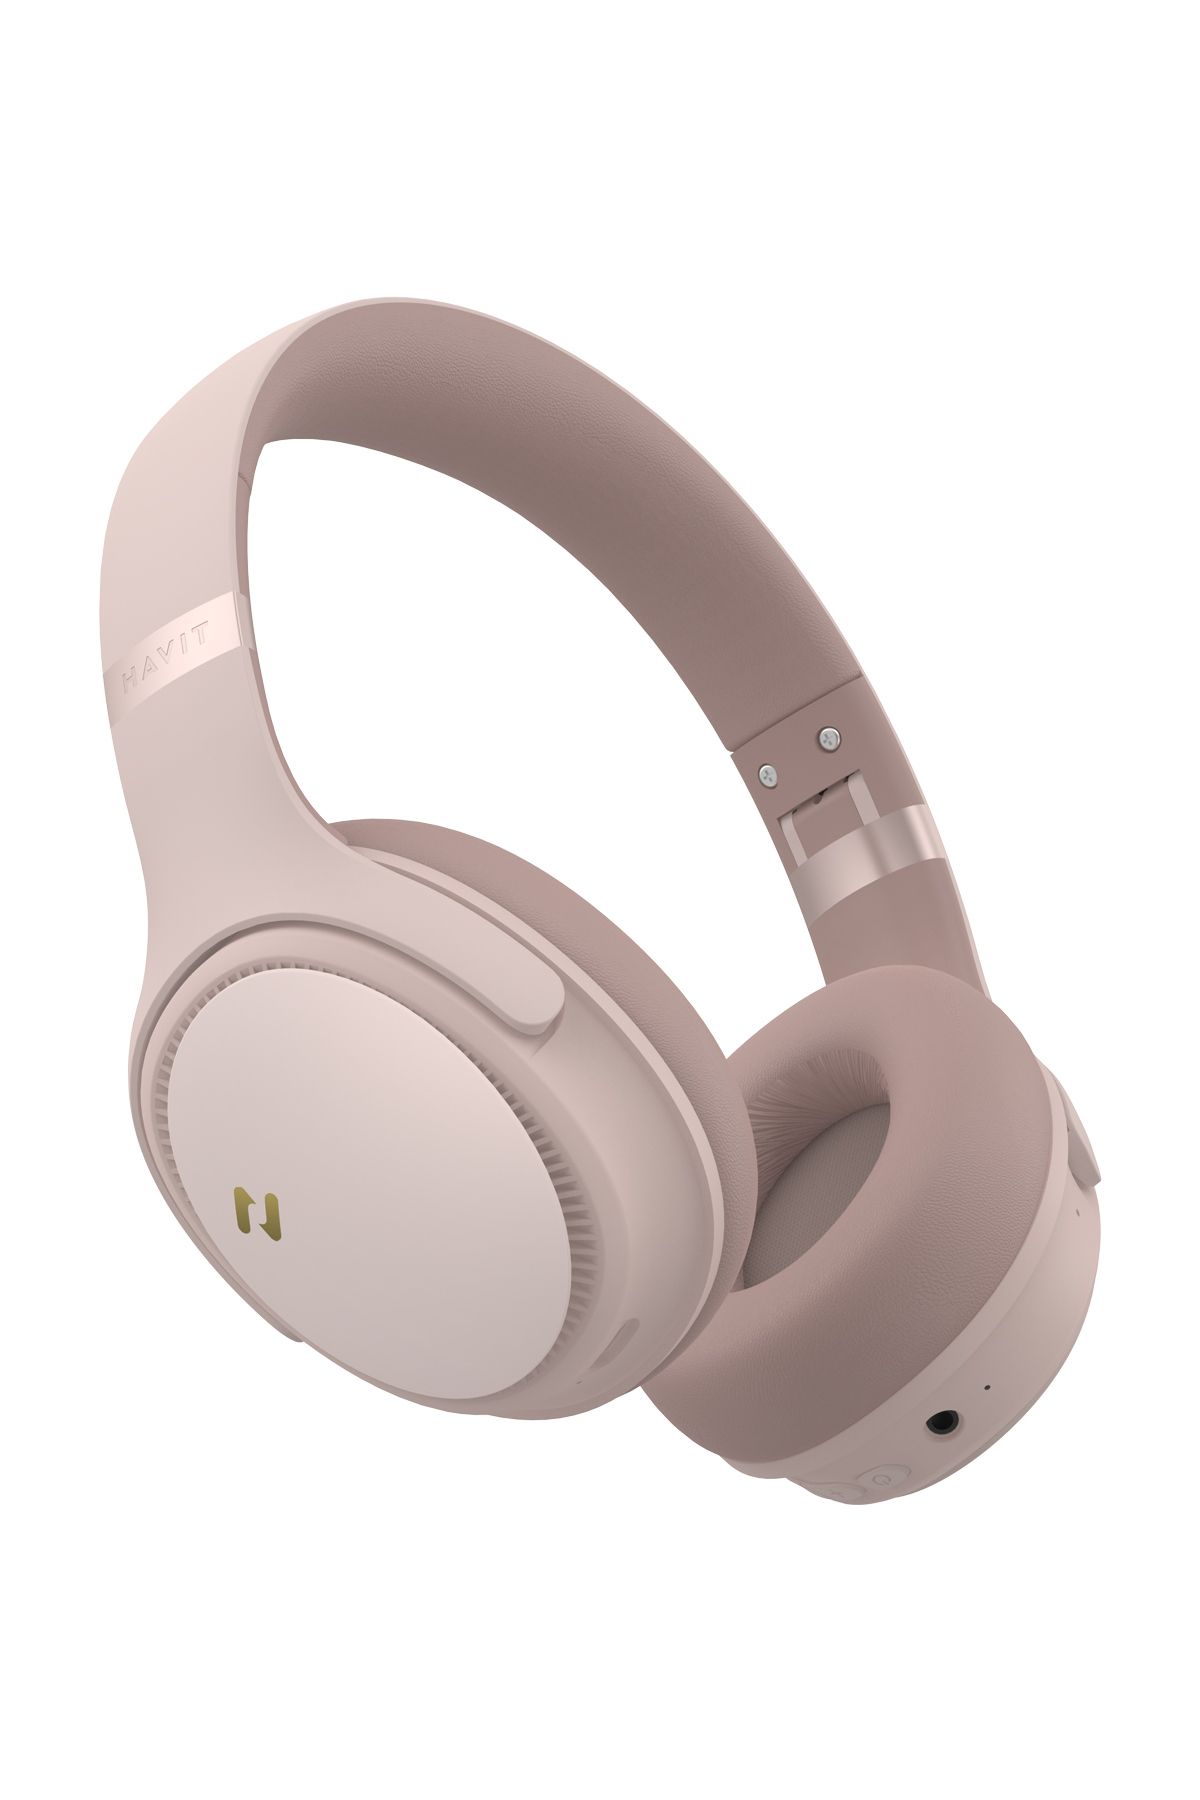 Havit H630BT PRO ANC Kulak Üstü Katlanabilir Bluetooth Kulaklık - 50 Saat Batarya Çift Cihaz Desteği